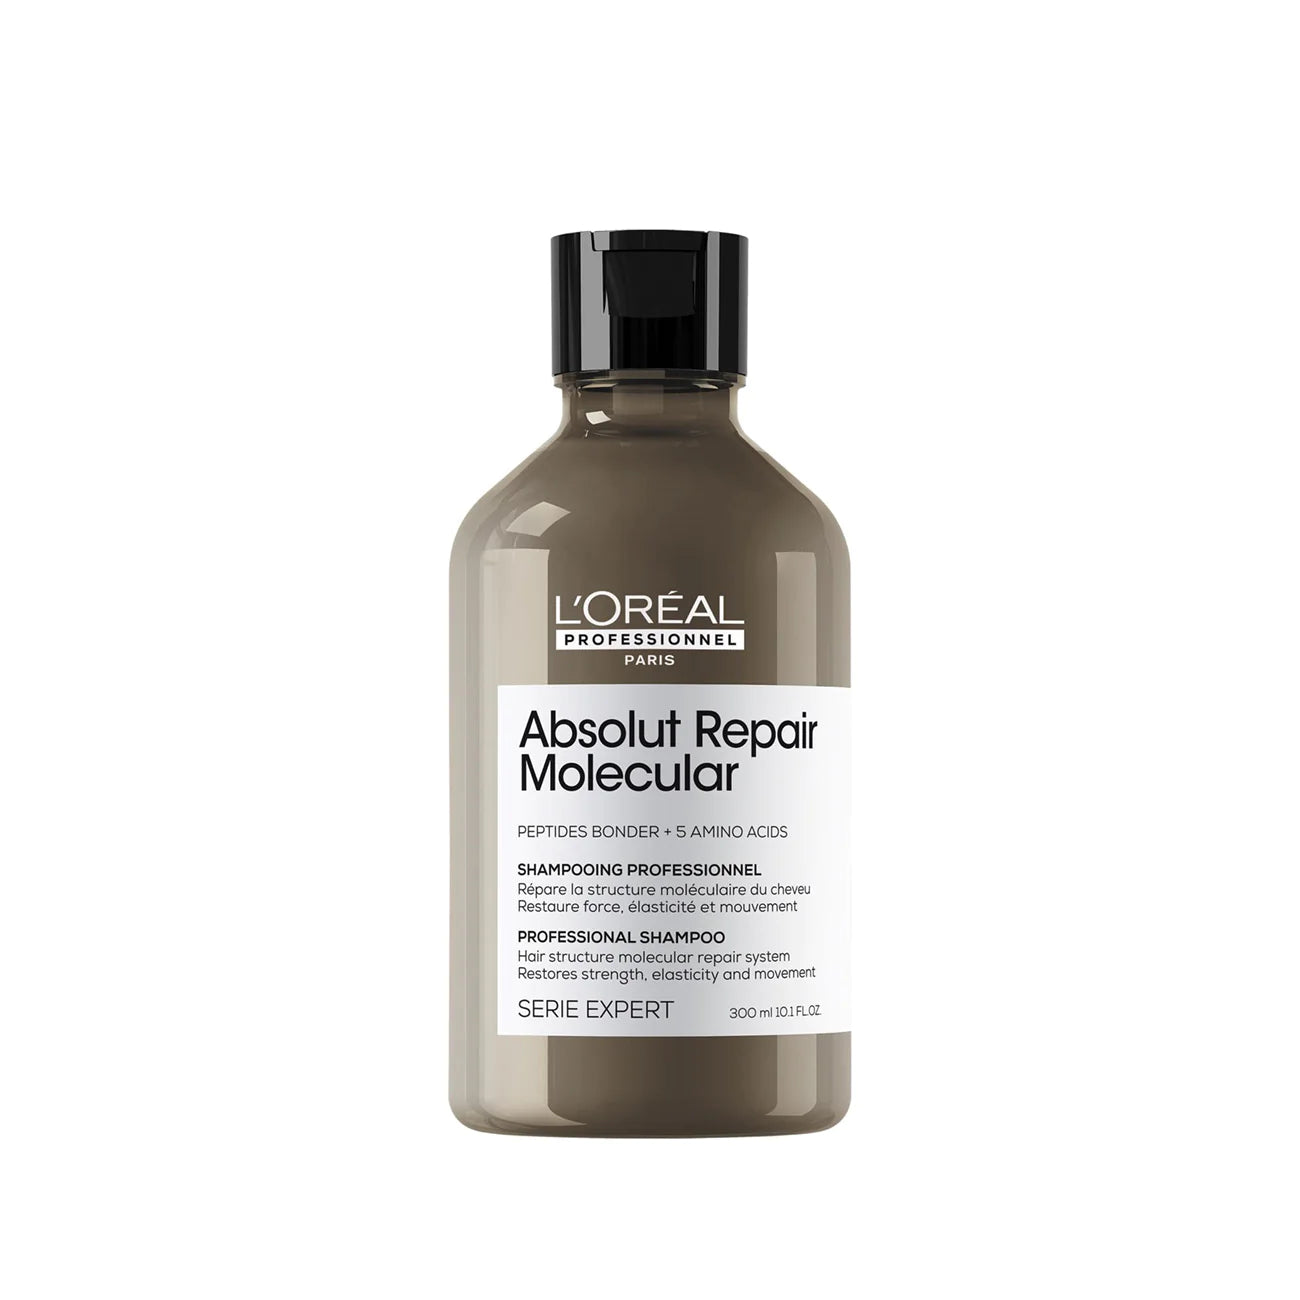 L'Oréal Paris - Absolut Repair Molecular - Sulfate-Free Molecular Repairing Shampoo For Damaged Hair | MazenOnline